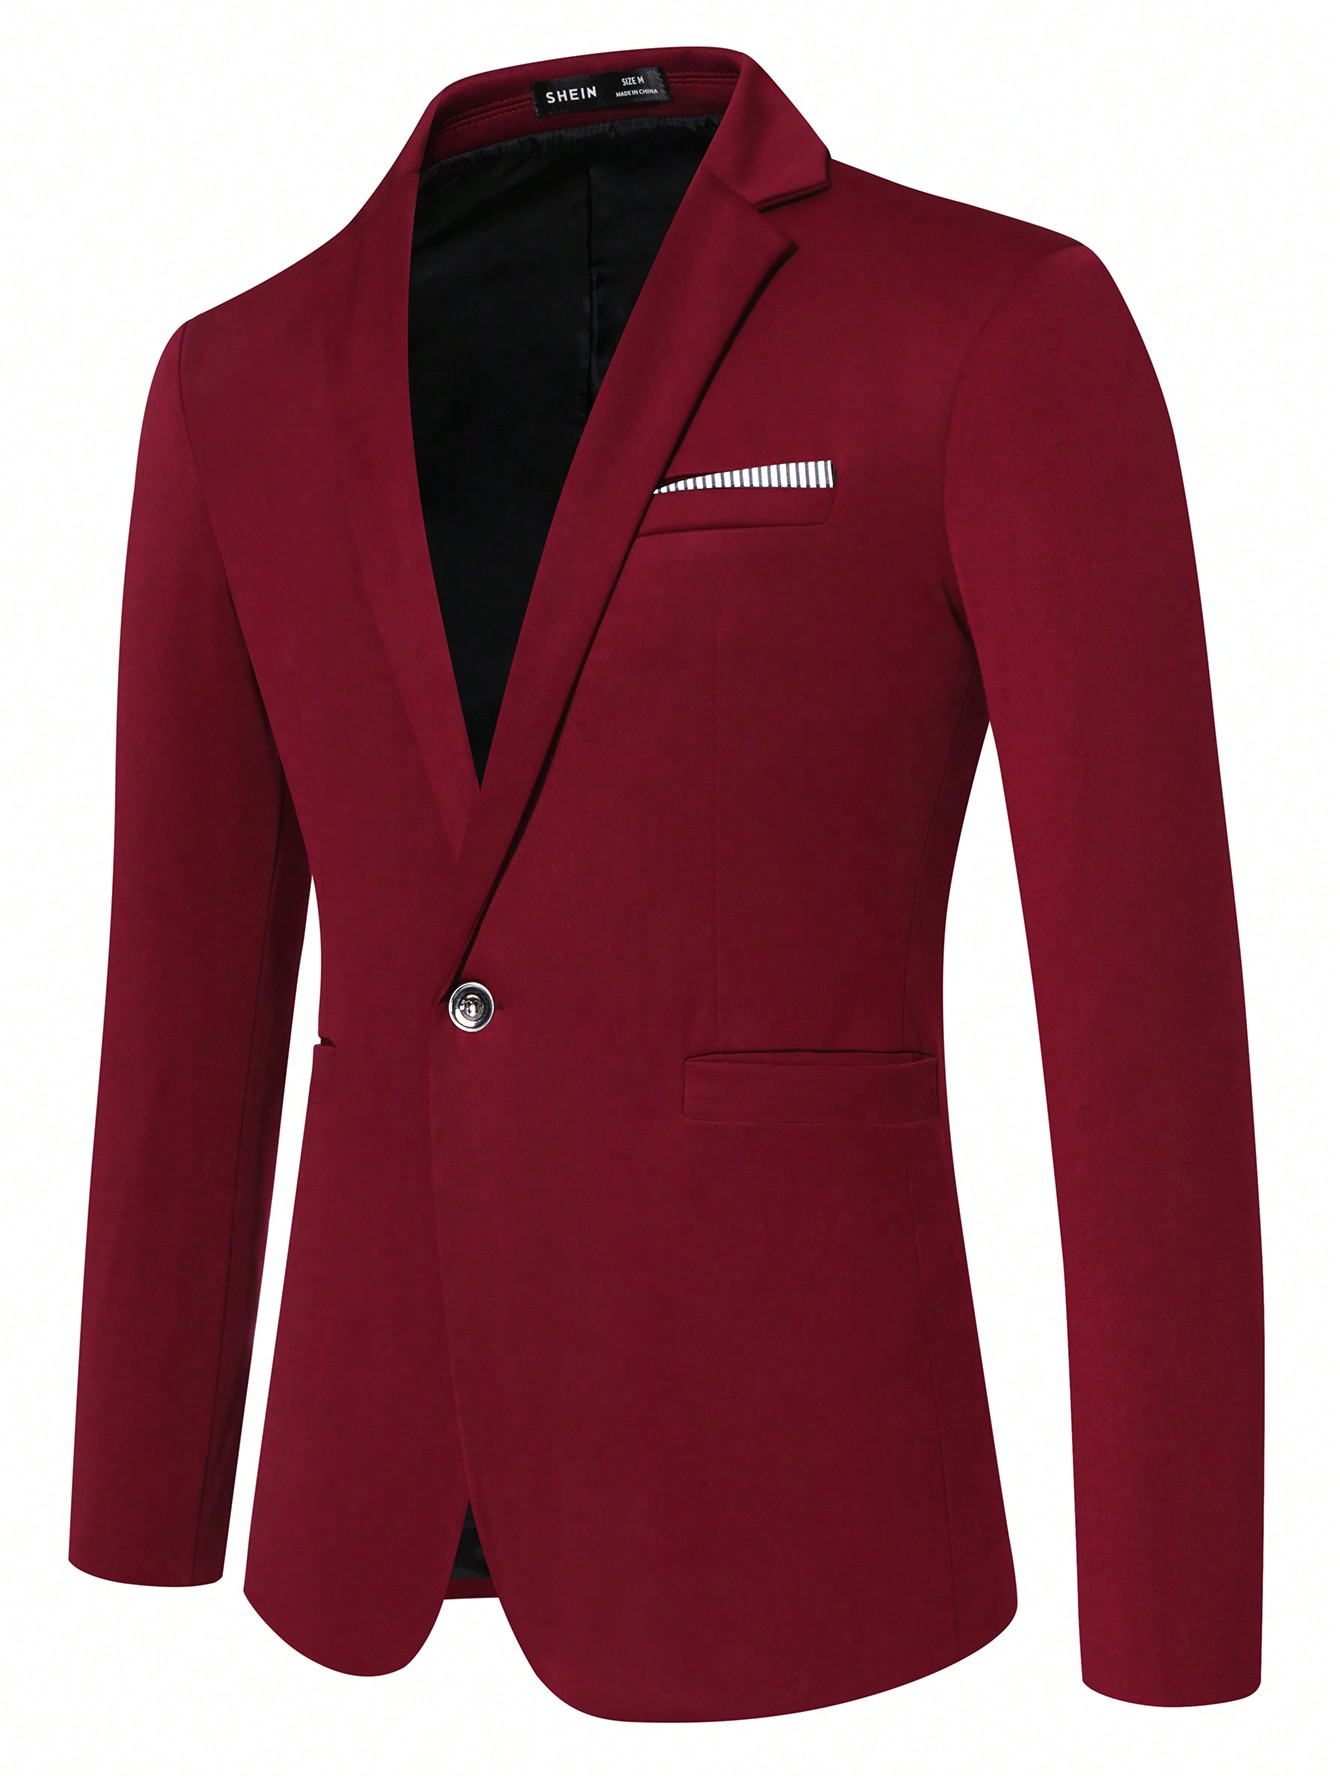 Мужской пиджак с длинными рукавами и зубчатыми лацканами Manfinity Mode, красный мужской однобортный трикотажный кардиган с лацканами и длинными рукавами